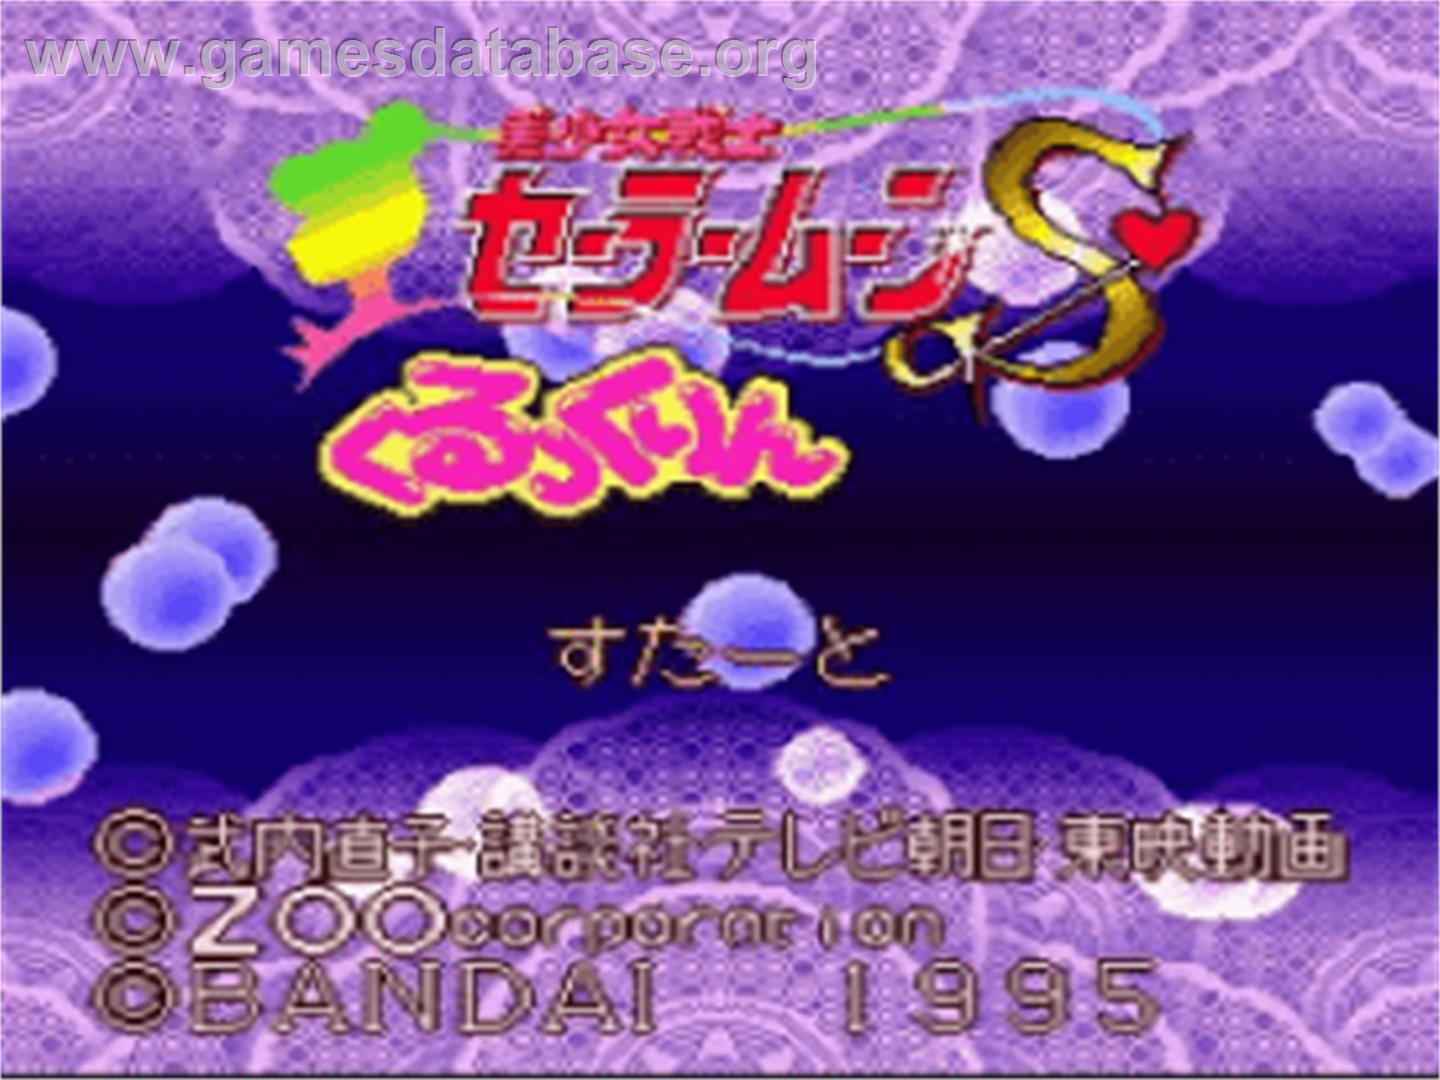 Bishoujo Senshi Sailor Moon S: Kurukkurin - Nintendo SNES - Artwork - Title Screen